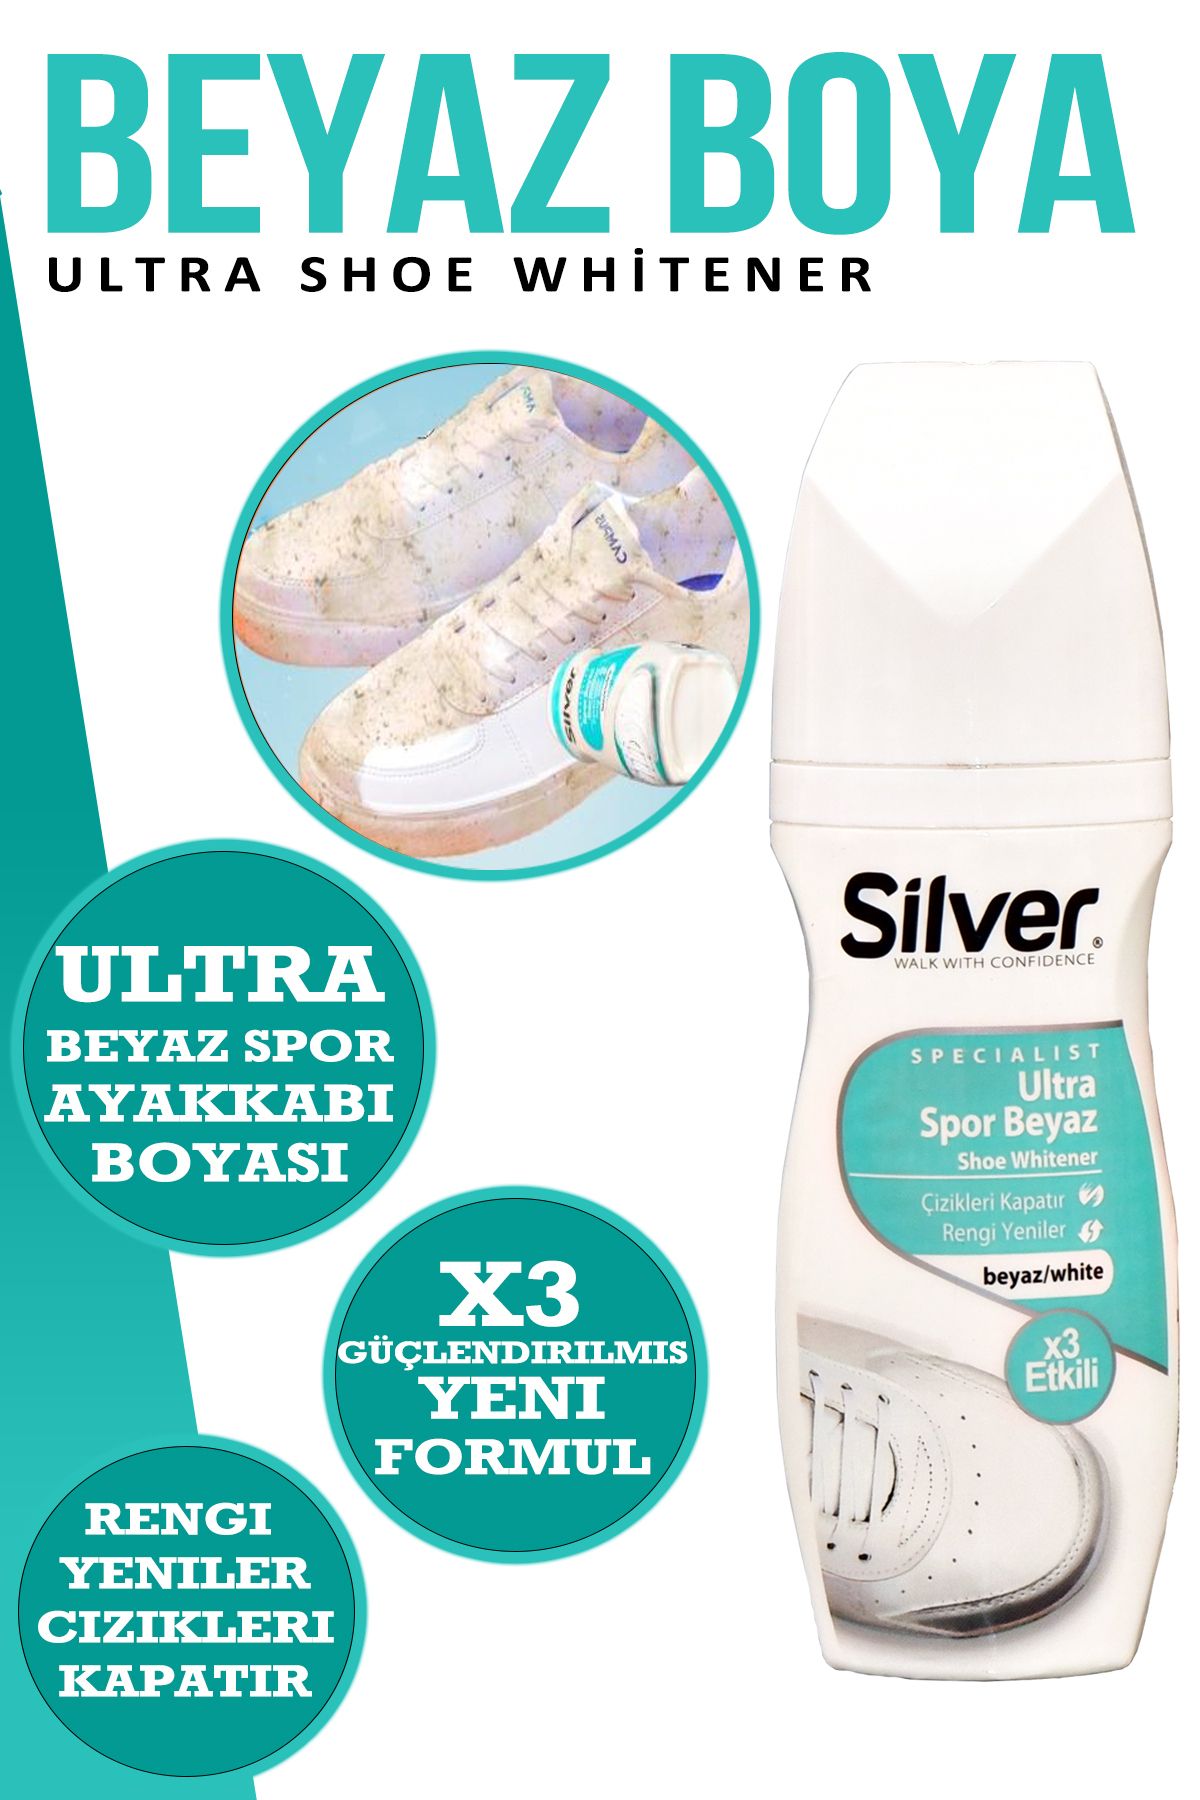 Silver X3 Etkili Güçlendirilmiş Ultra Beyaz Spor Bez Ve Kumaş Likit Ayakkabı Boyası 75 ml